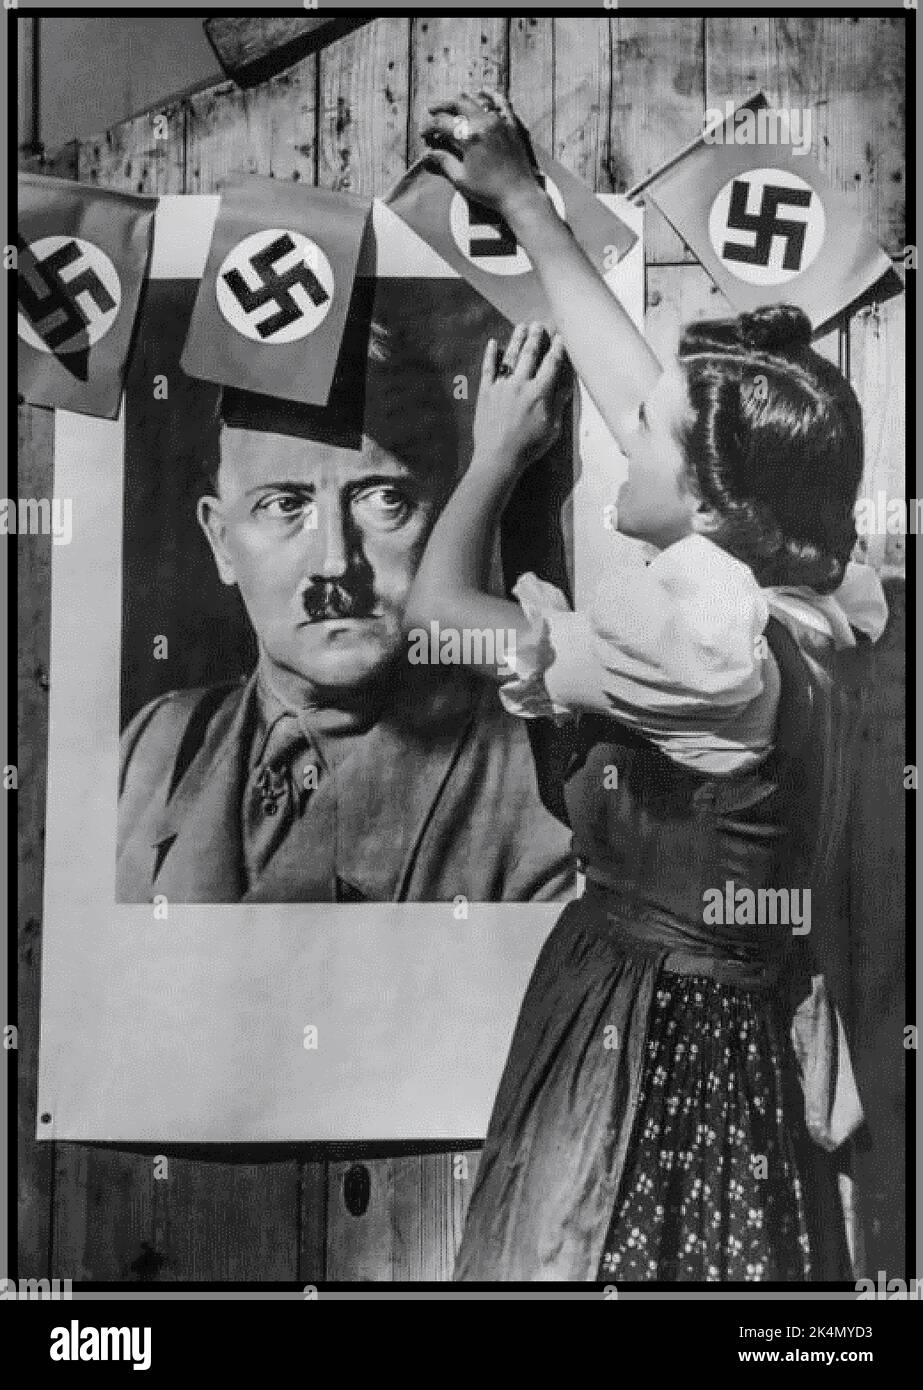 Les troupes allemandes nazies l'occupation d'une jeune fille en Tchécoslovaquie habillent des drapeaux de la croix gammée autour du portrait d'Adolf Hitler en uniforme militaire pour montrer son soutien à l'Allemagne nazie 1938 Sudètes Tchécoslovaquie Banque D'Images